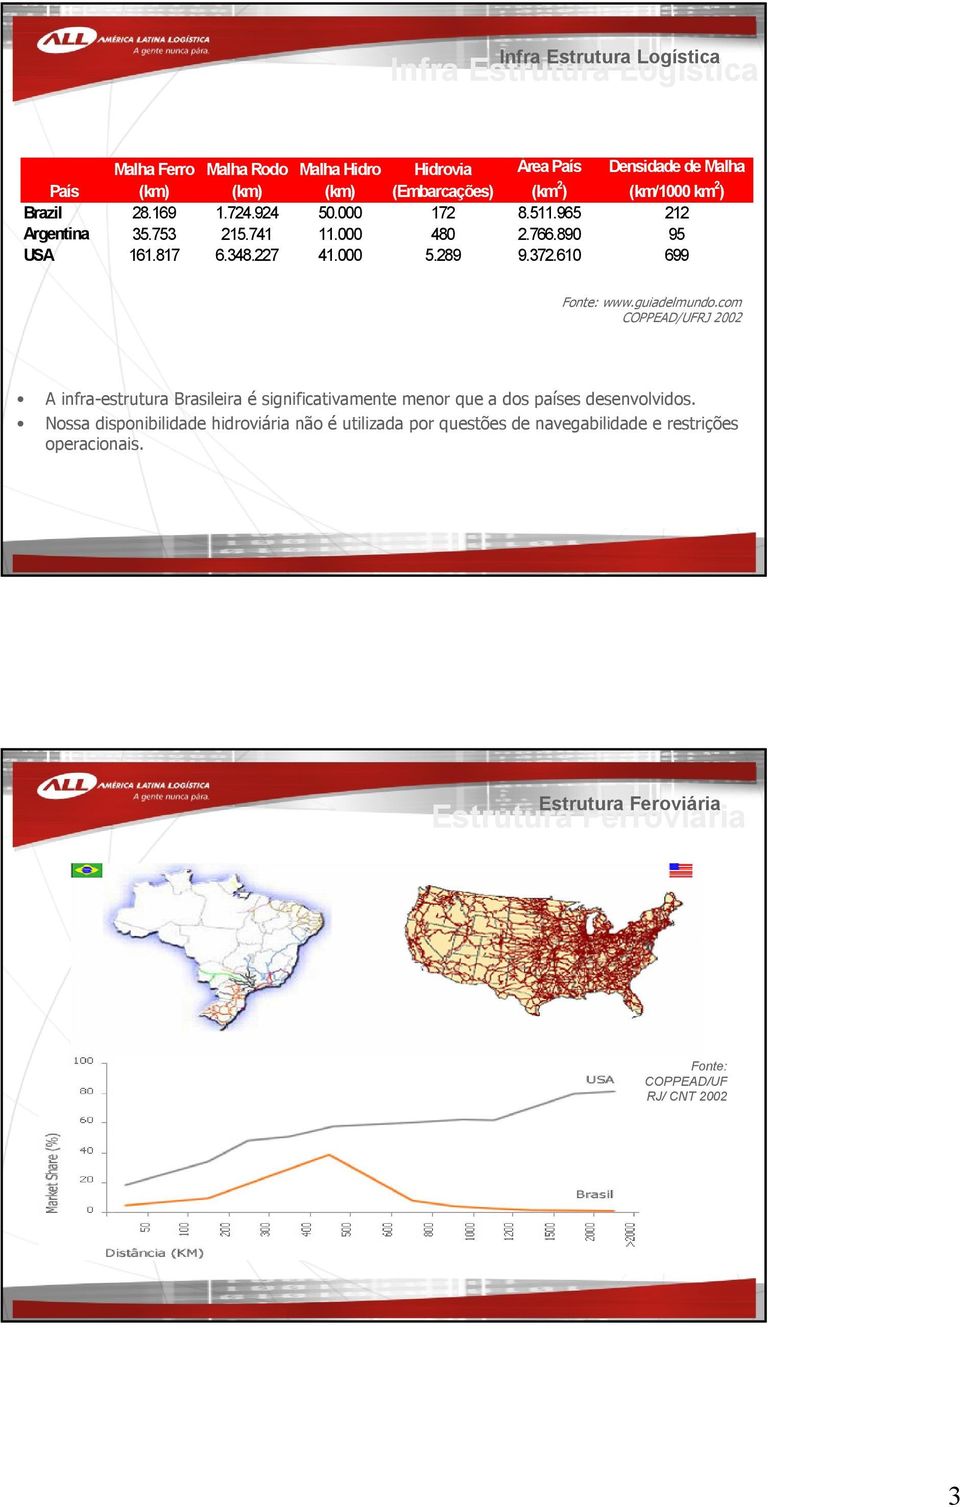 610 699 Fonte: www.guiadelmundo.com COPPEAD/UFRJ 2002 A infra-estrutura Brasileira é significativamente menor que a dos países desenvolvidos.